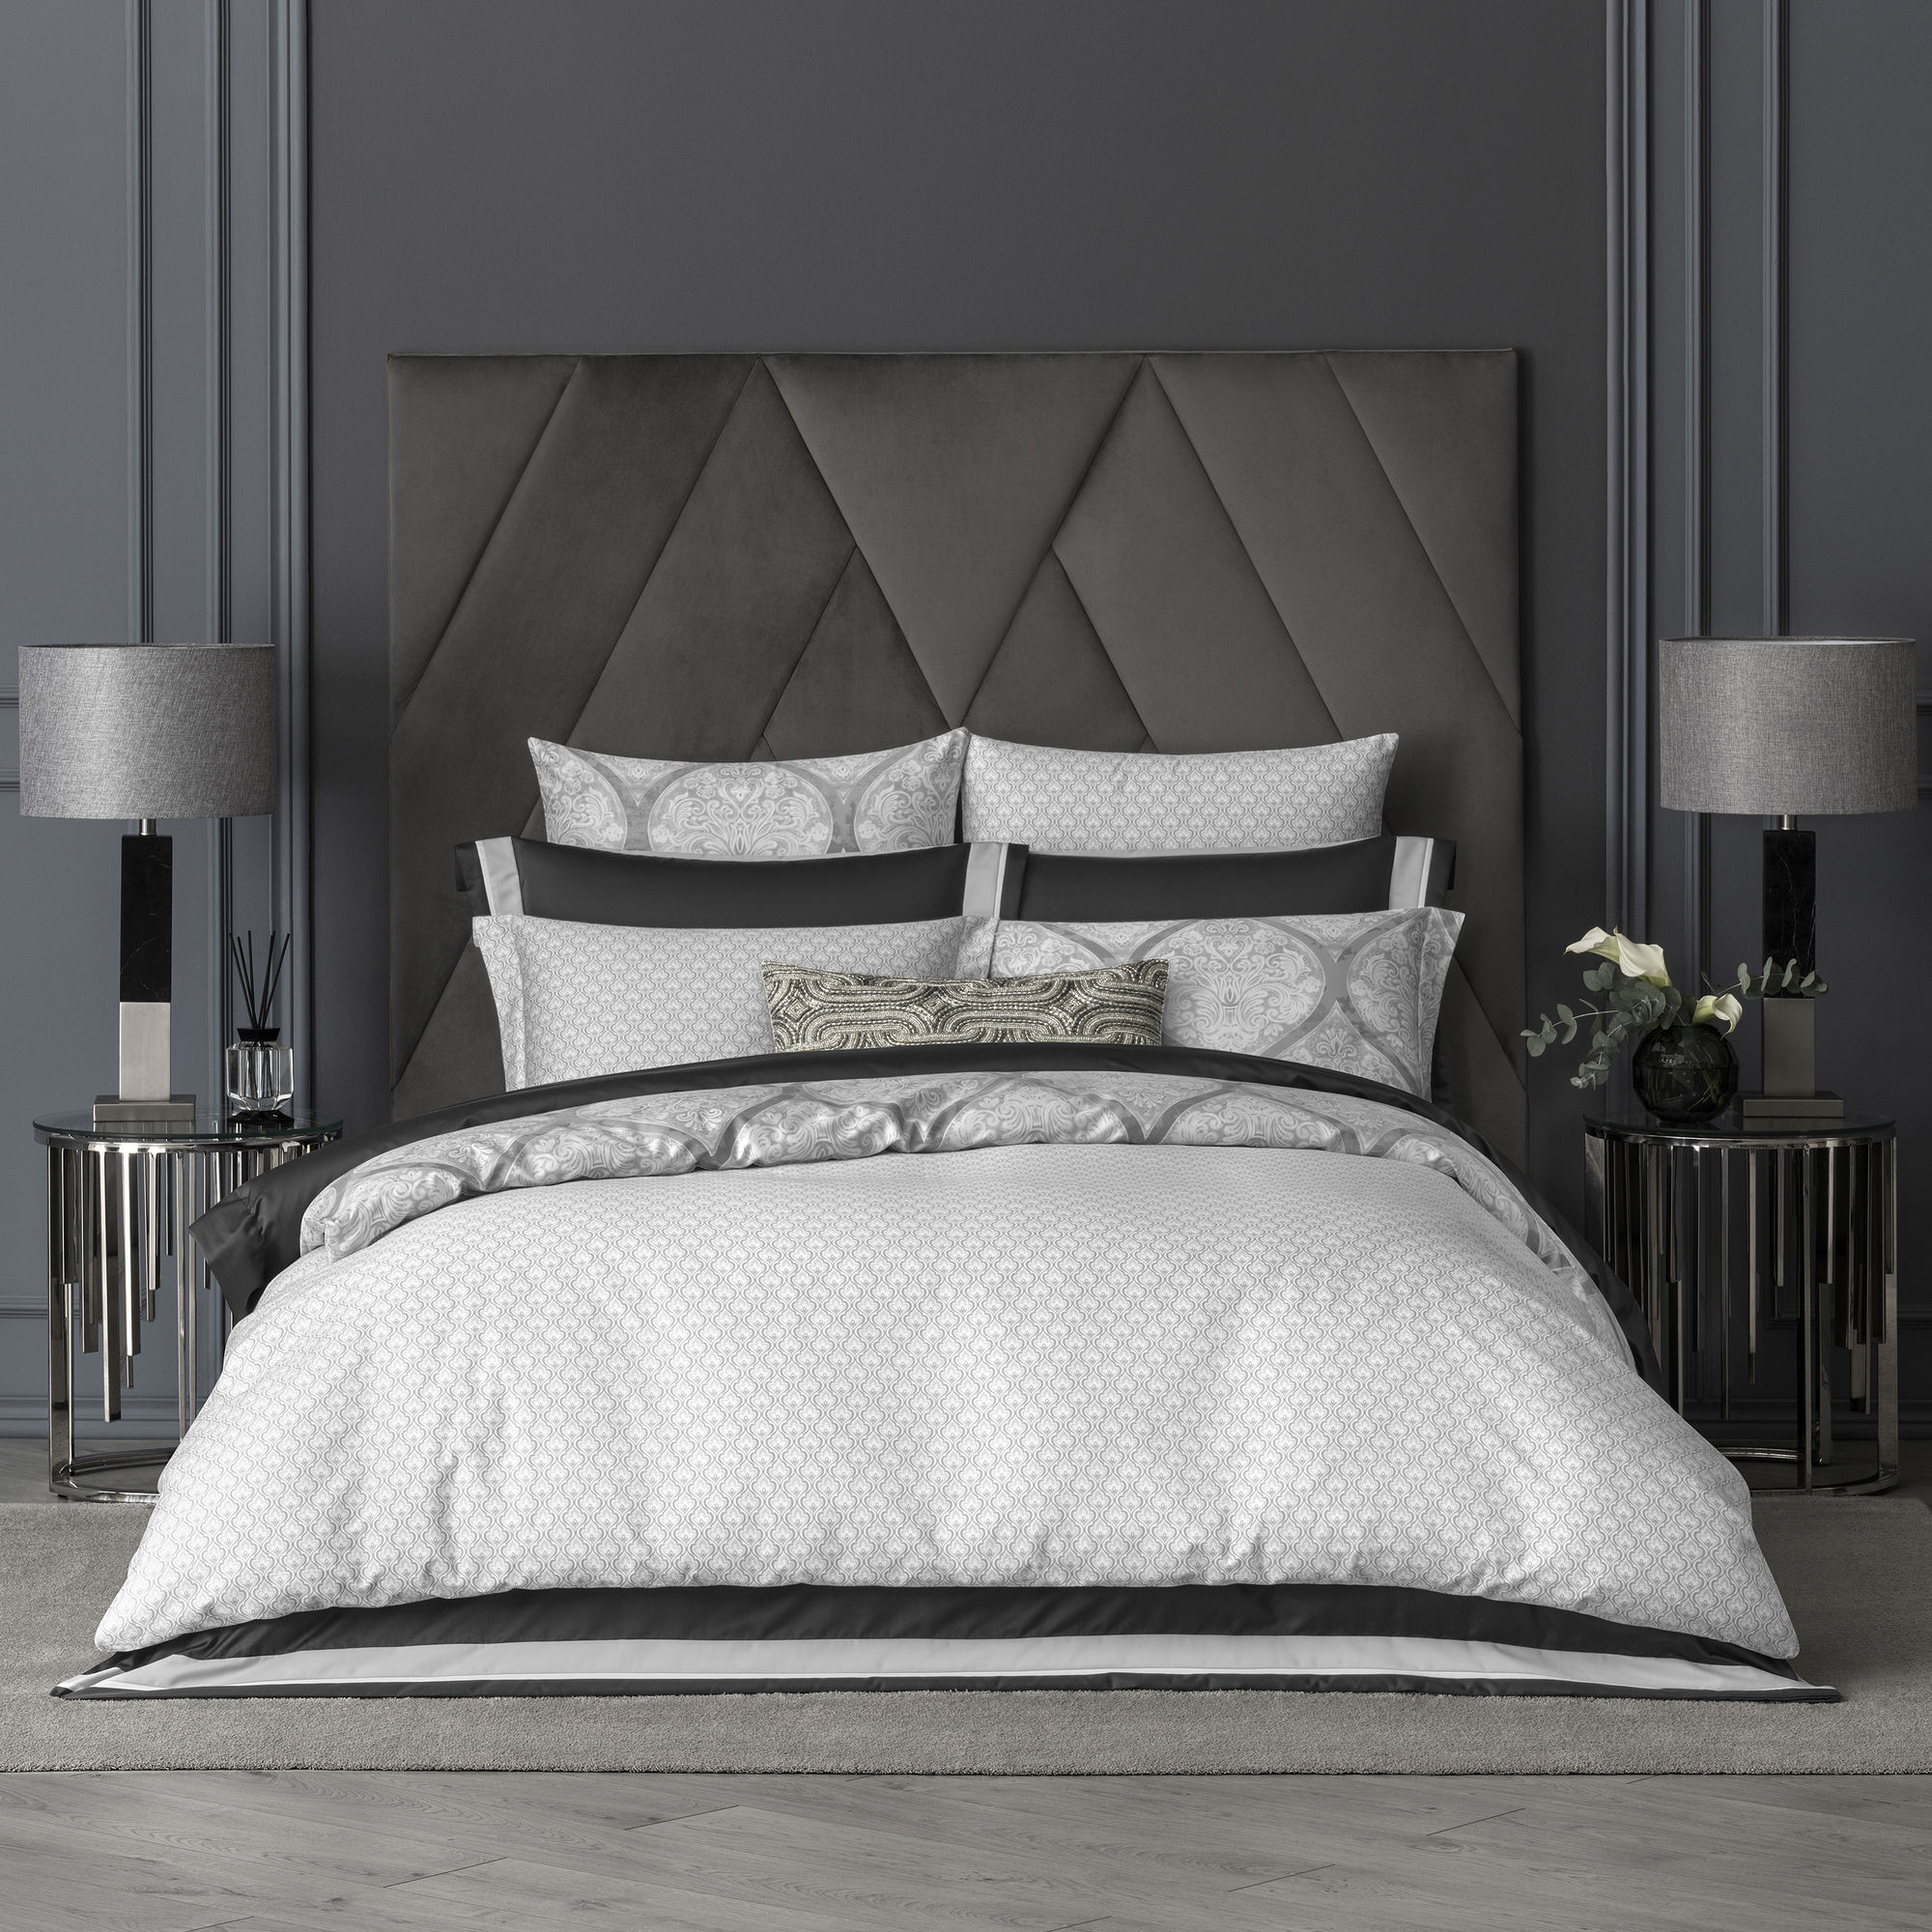 Комплект постельного белья Togas Коссоно серый Полуторный, размер Полуторный - фото 2